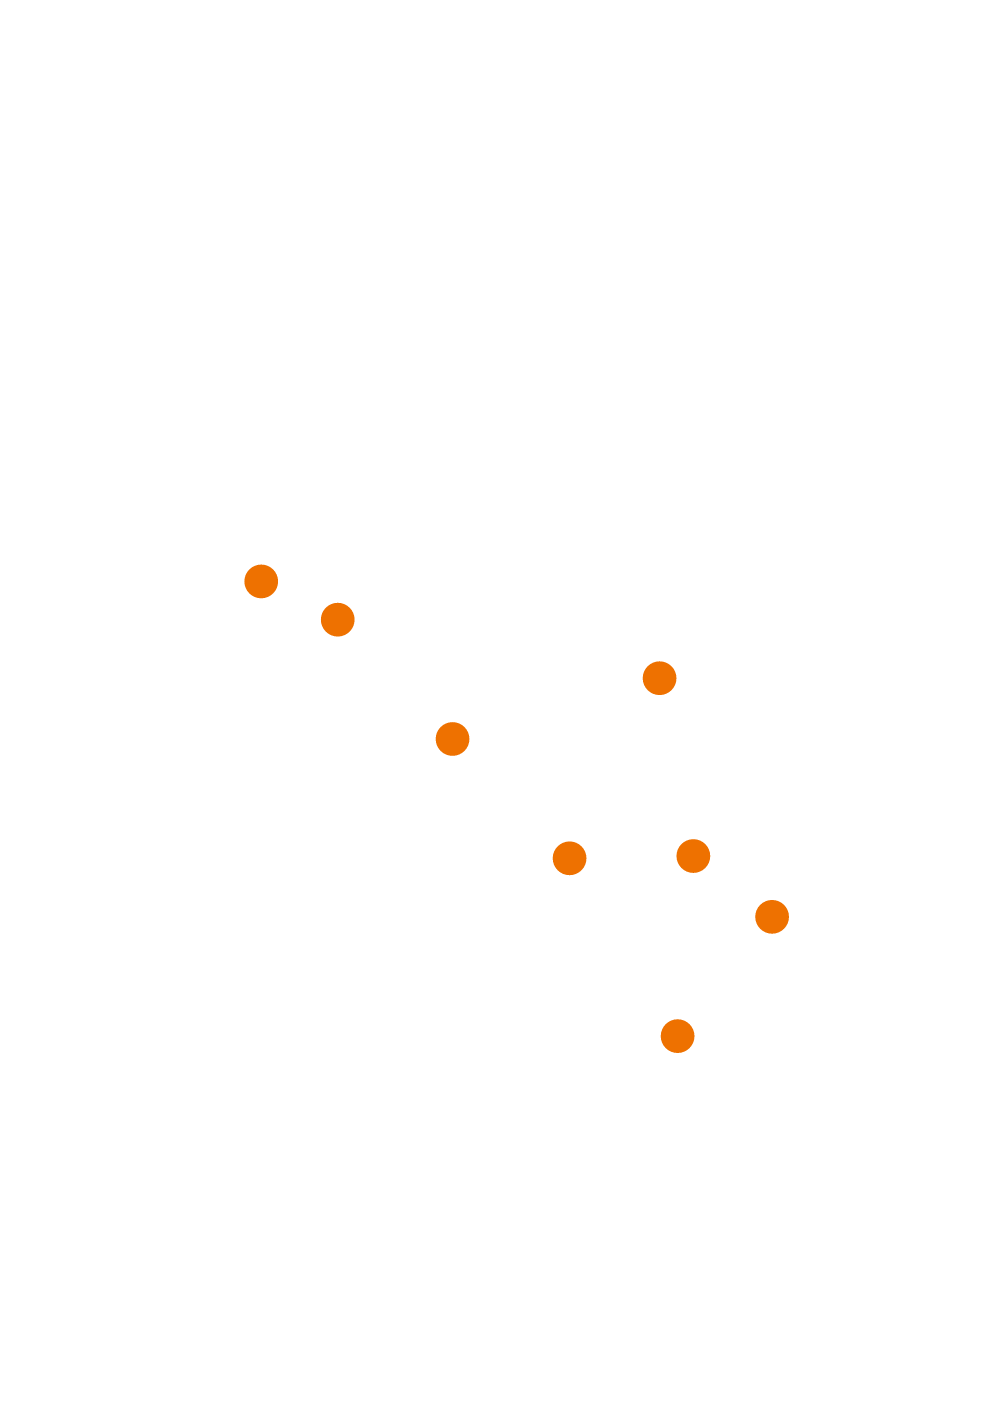 Karta regije